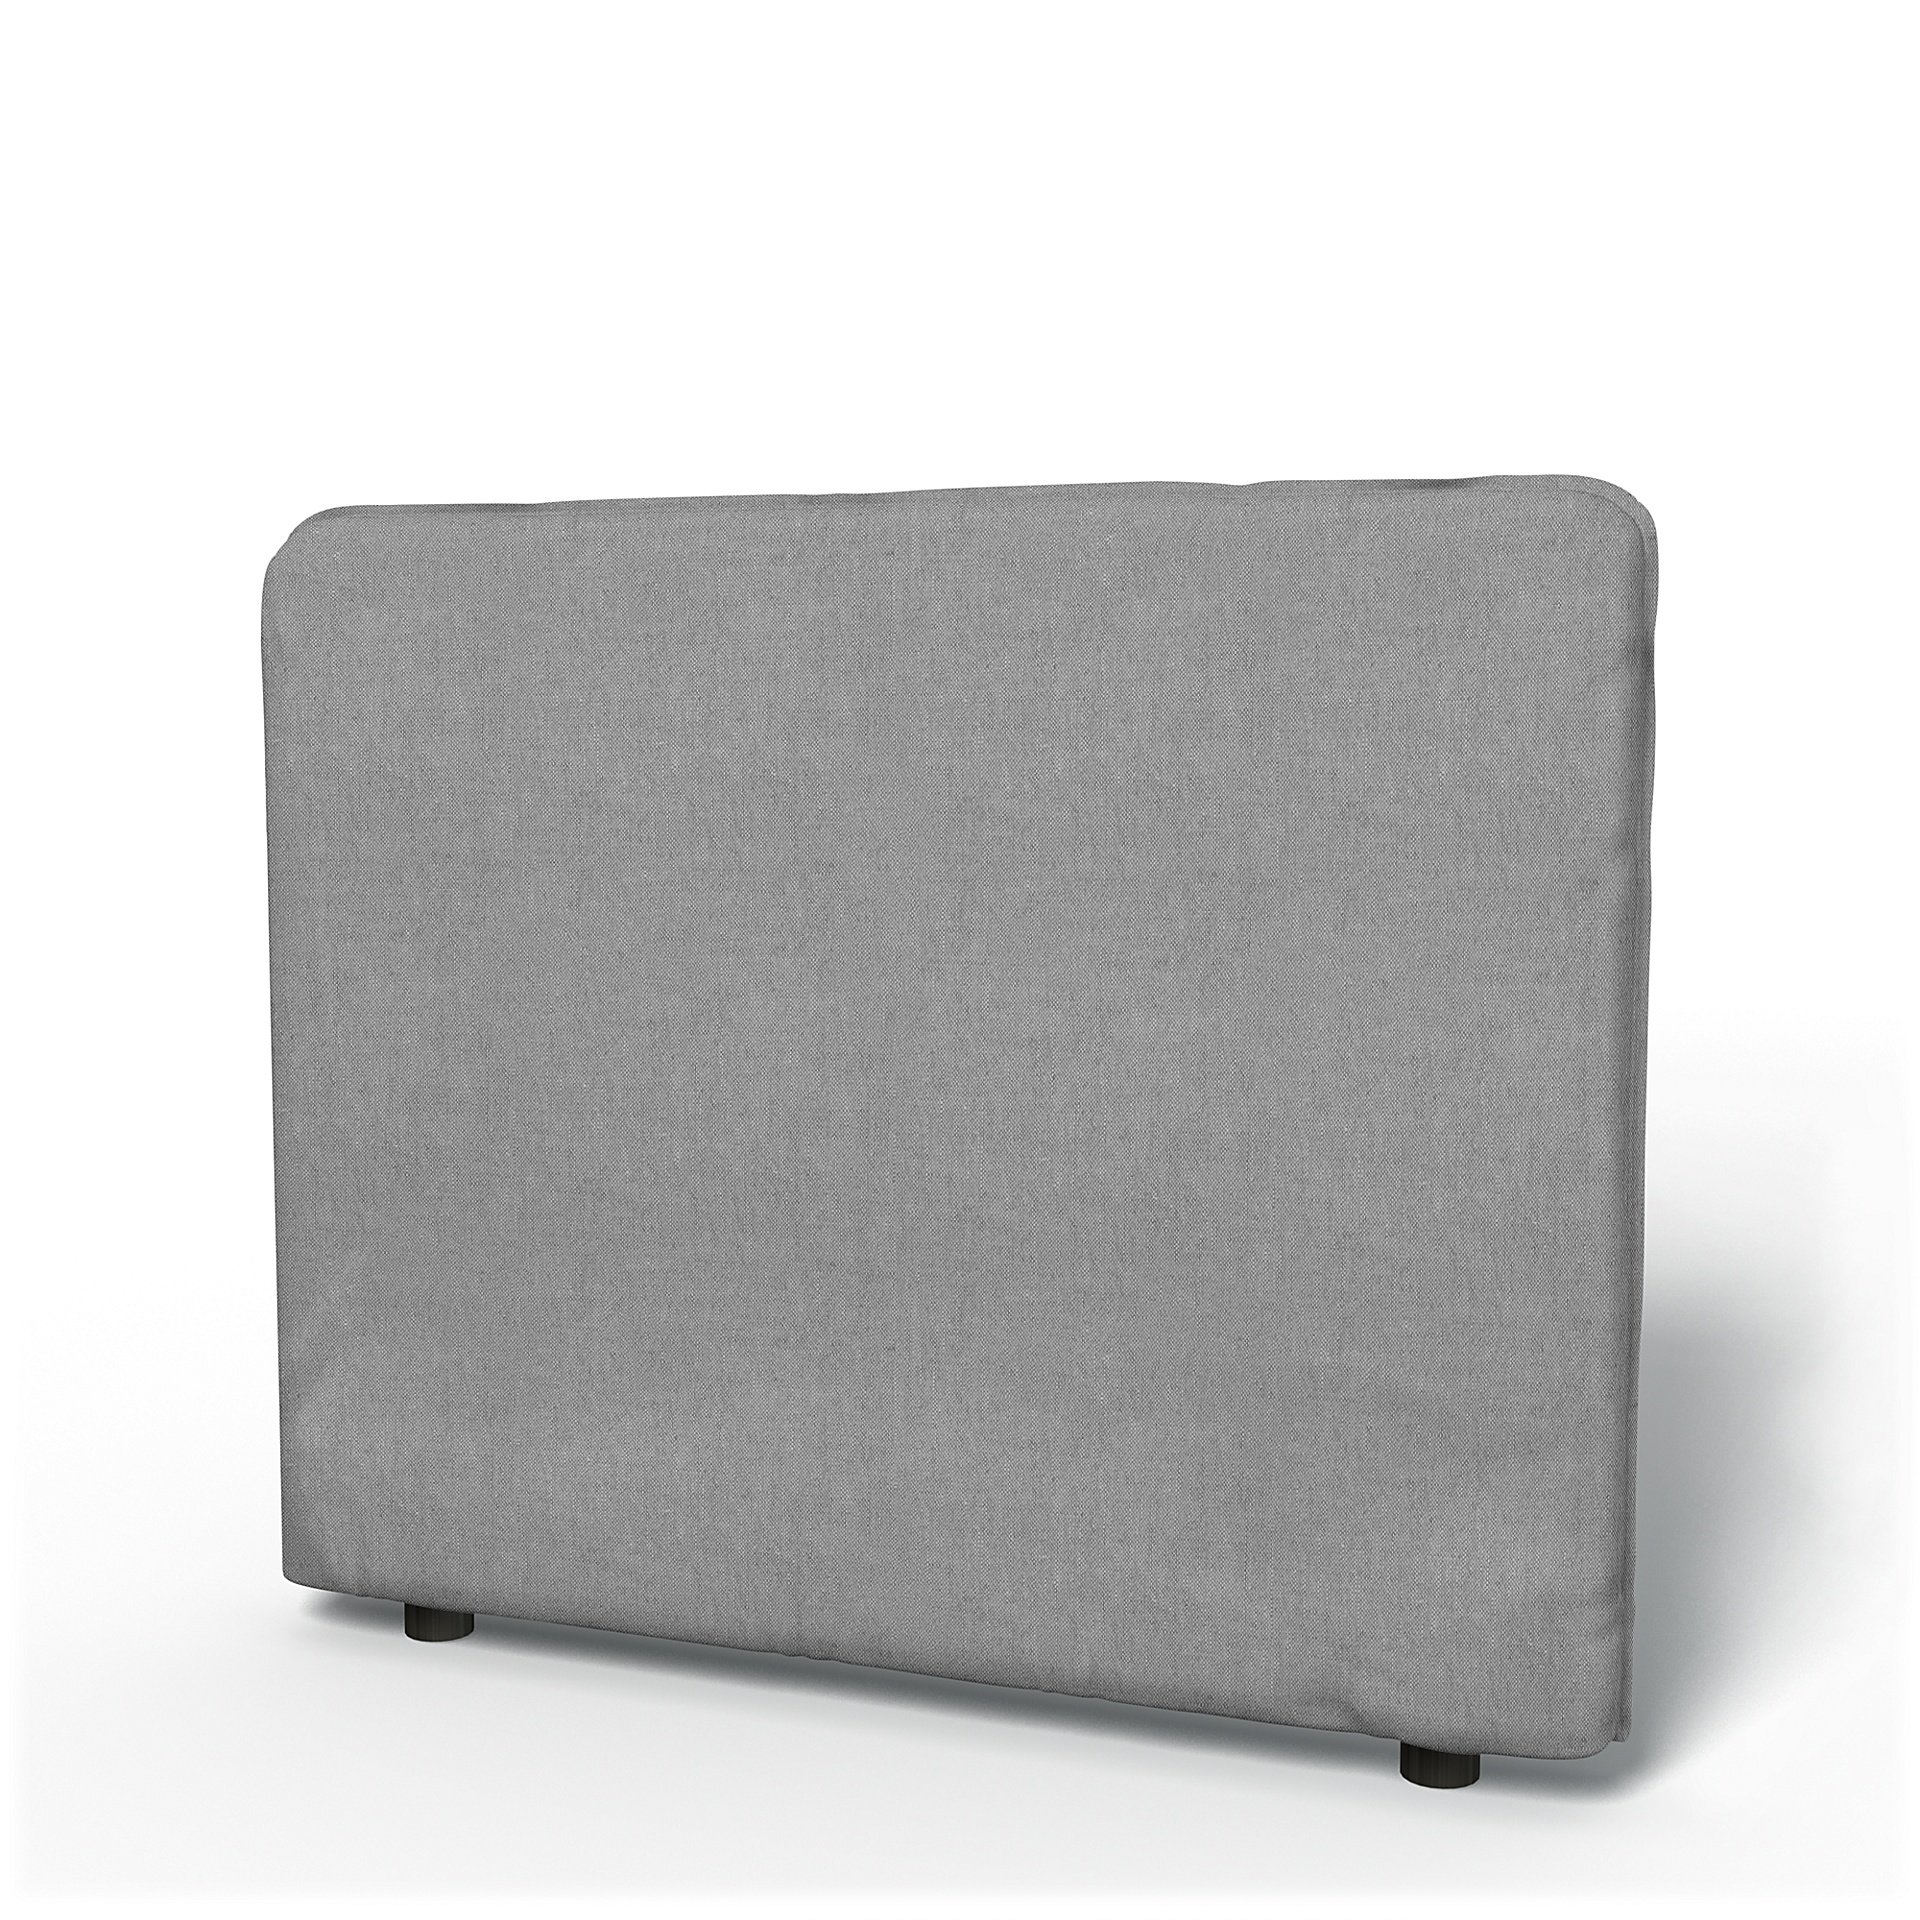 IKEA - Vallentuna Low Backrest Cover 100x80cm 39x32in, Graphite, Linen - Bemz